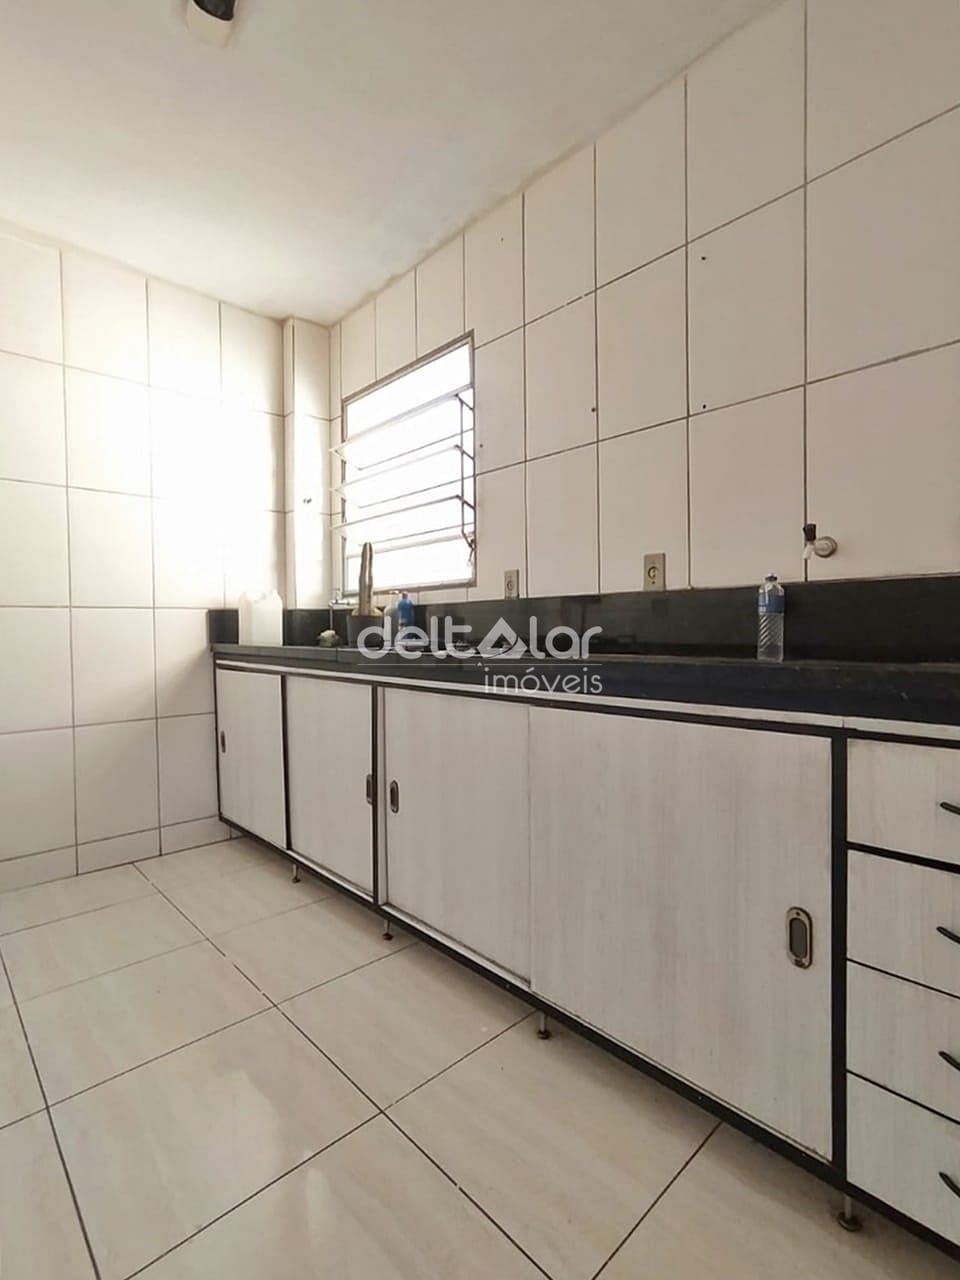 Apartamento em Juliana, Belo Horizonte/MG de 48m² 2 quartos para locação R$ 787,00/mes